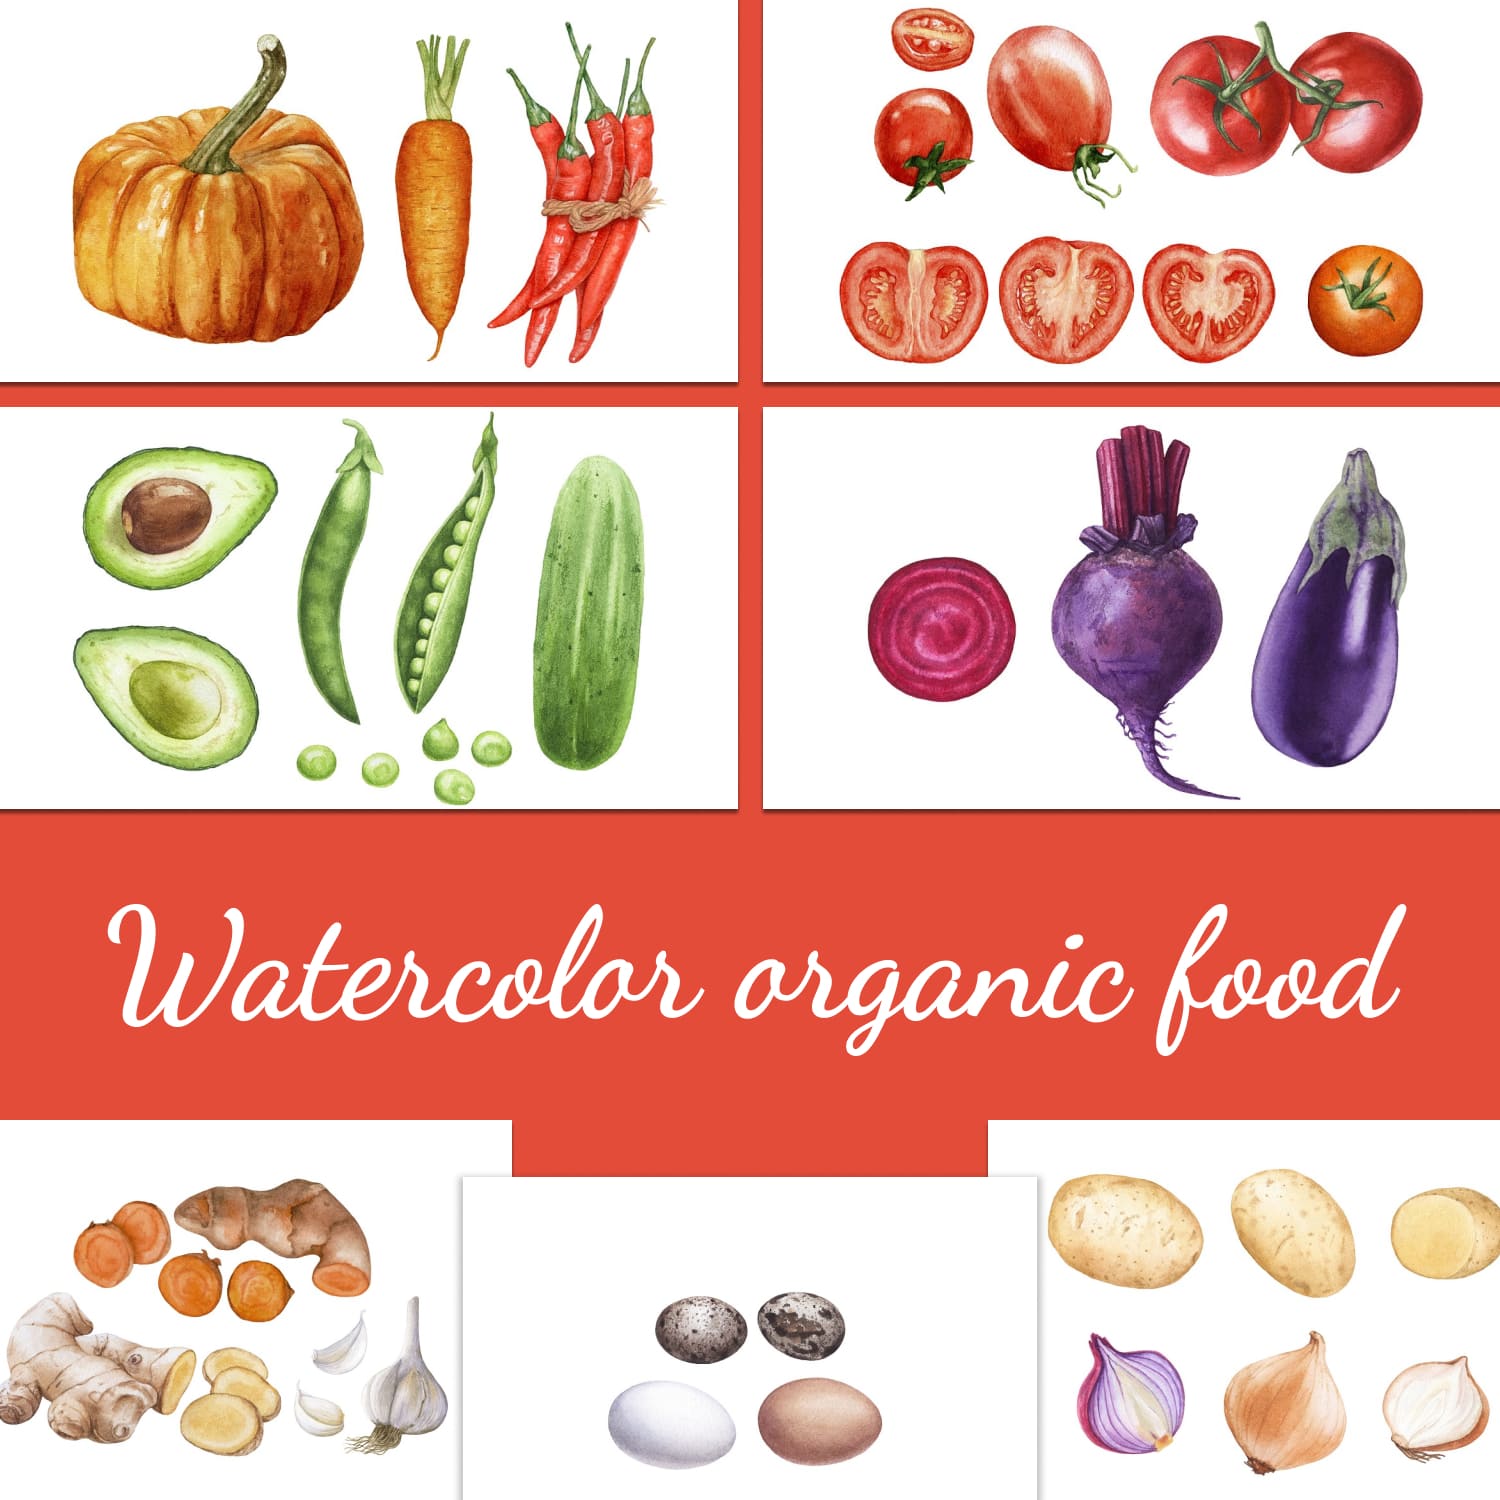 Watercolor organic food - main image preview.